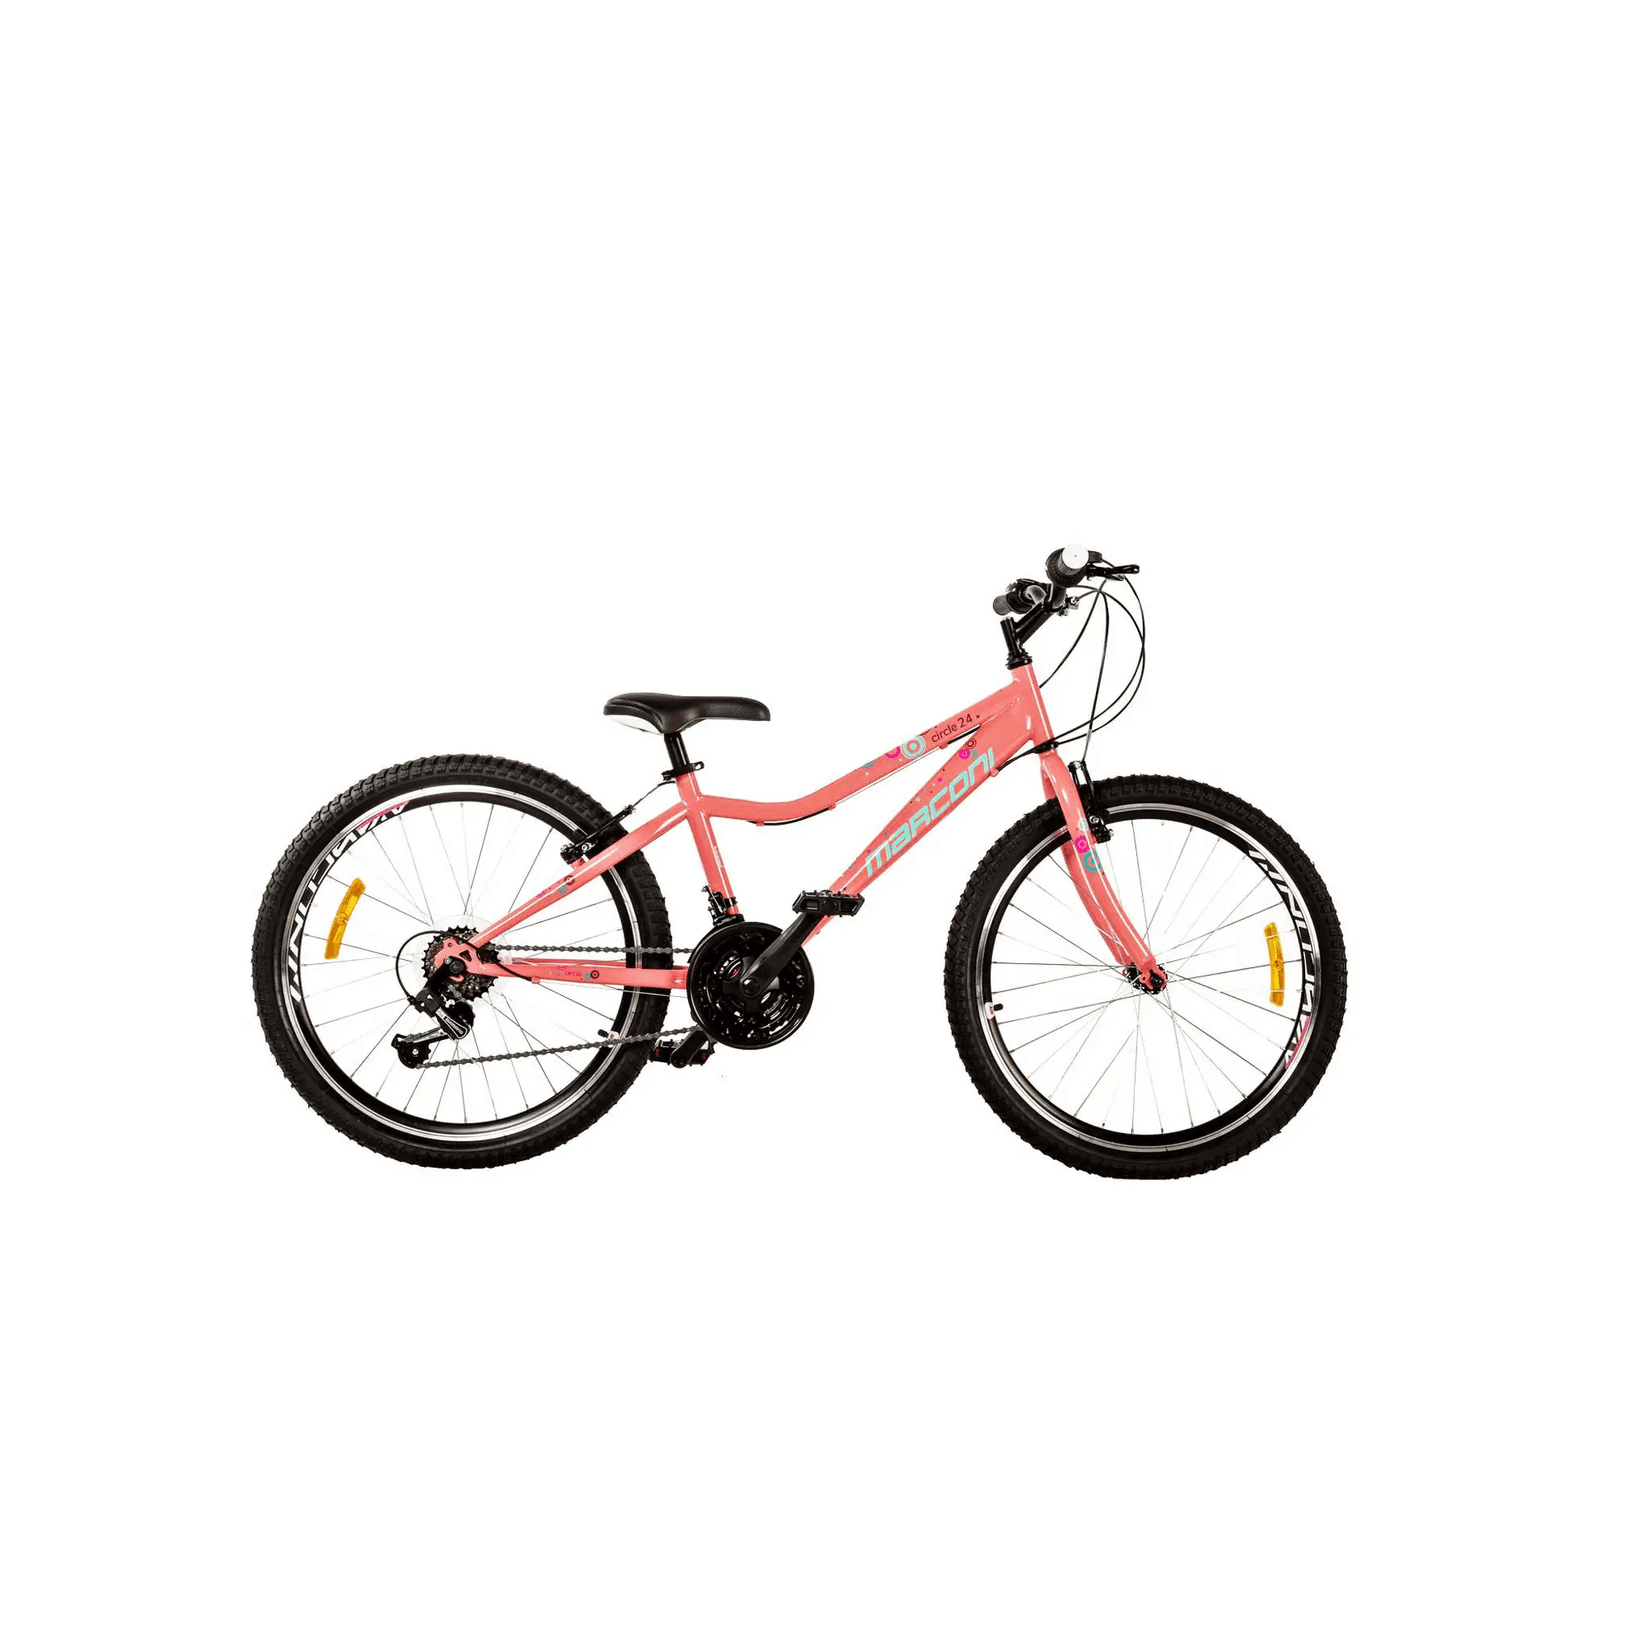 Selected image for MARCONI Bicikl za devojčice Circle 24"/13 koralni